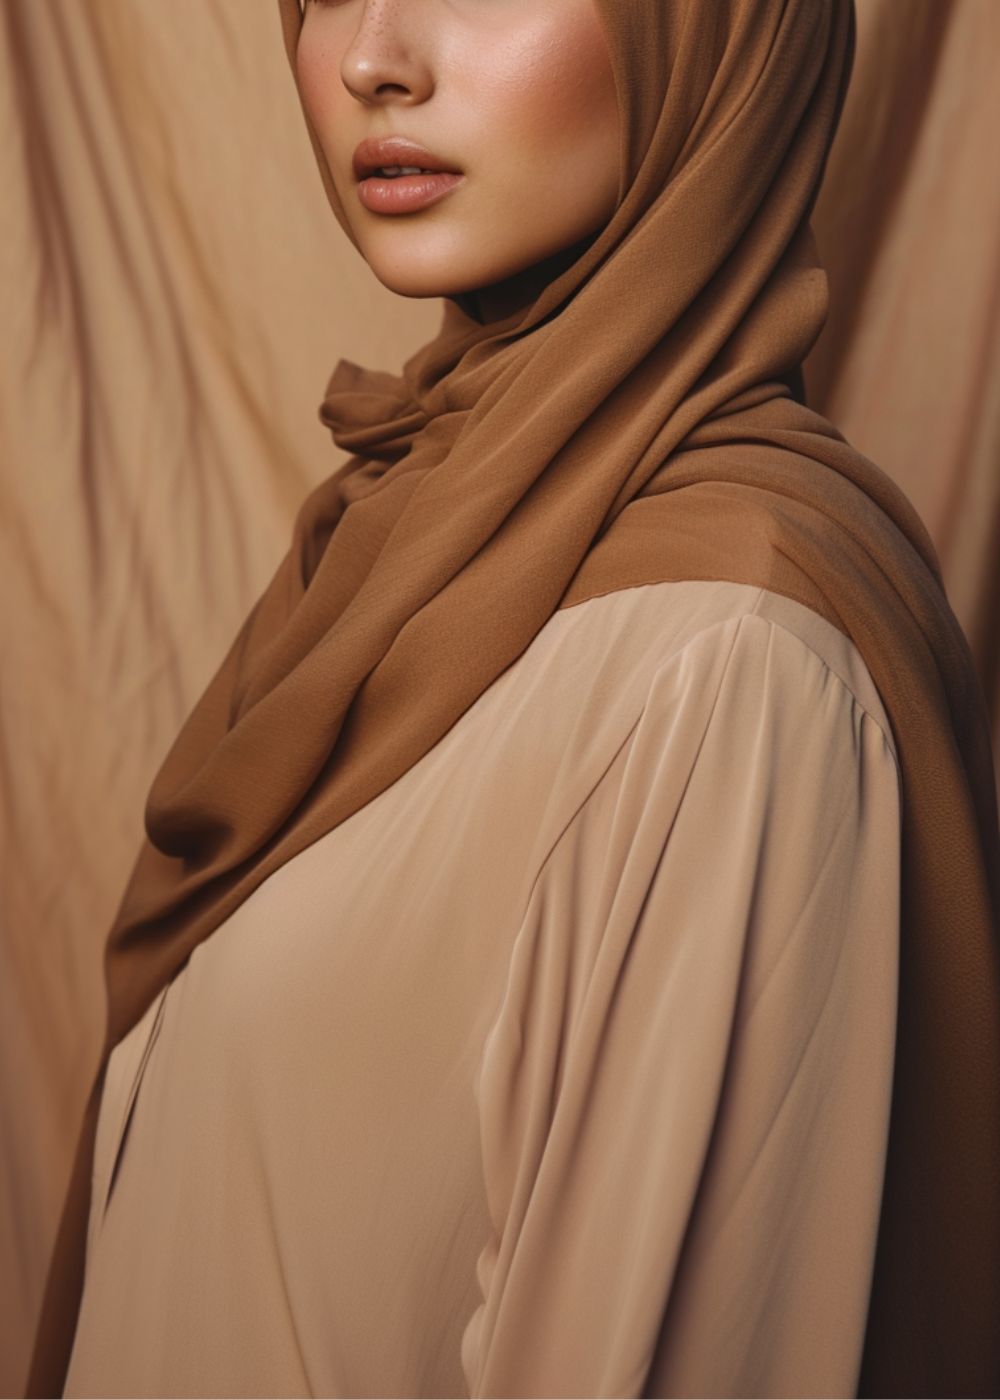 A hijabi wearing a brown rayon hijab from momina hijabs